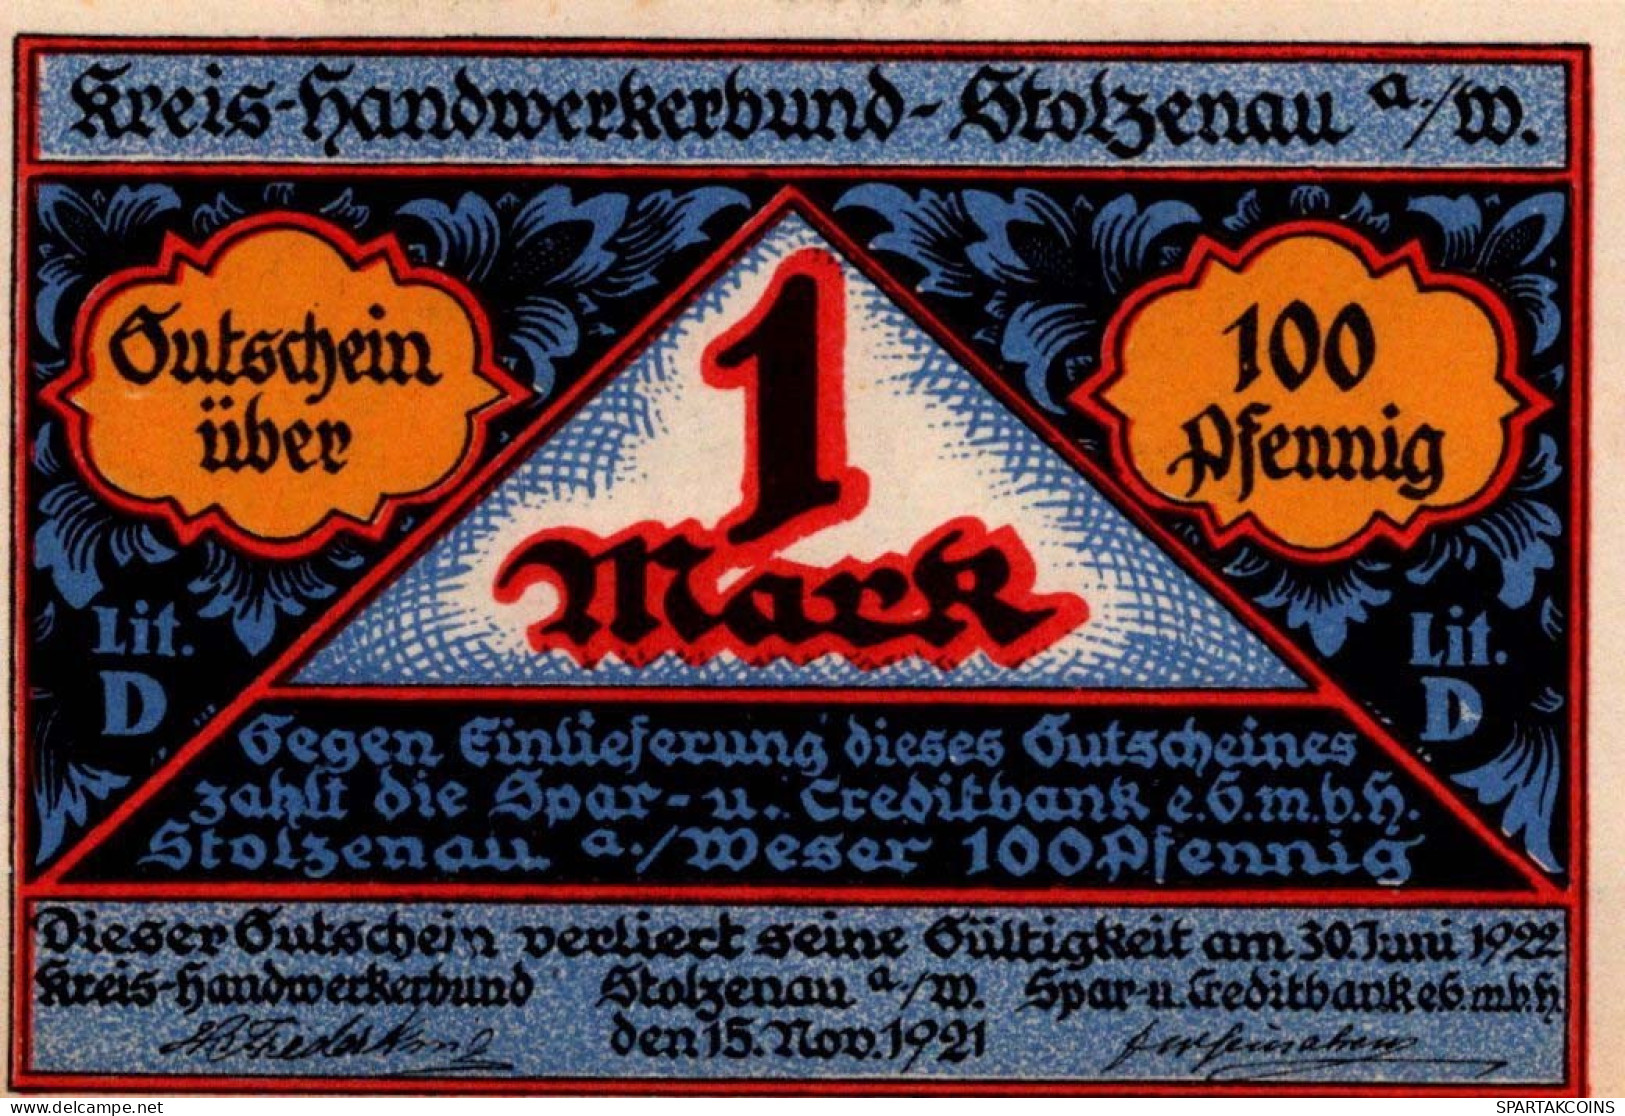 1 MARK 1922 Stadt STOLZENAU Hanover DEUTSCHLAND Notgeld Banknote #PF948 - [11] Local Banknote Issues